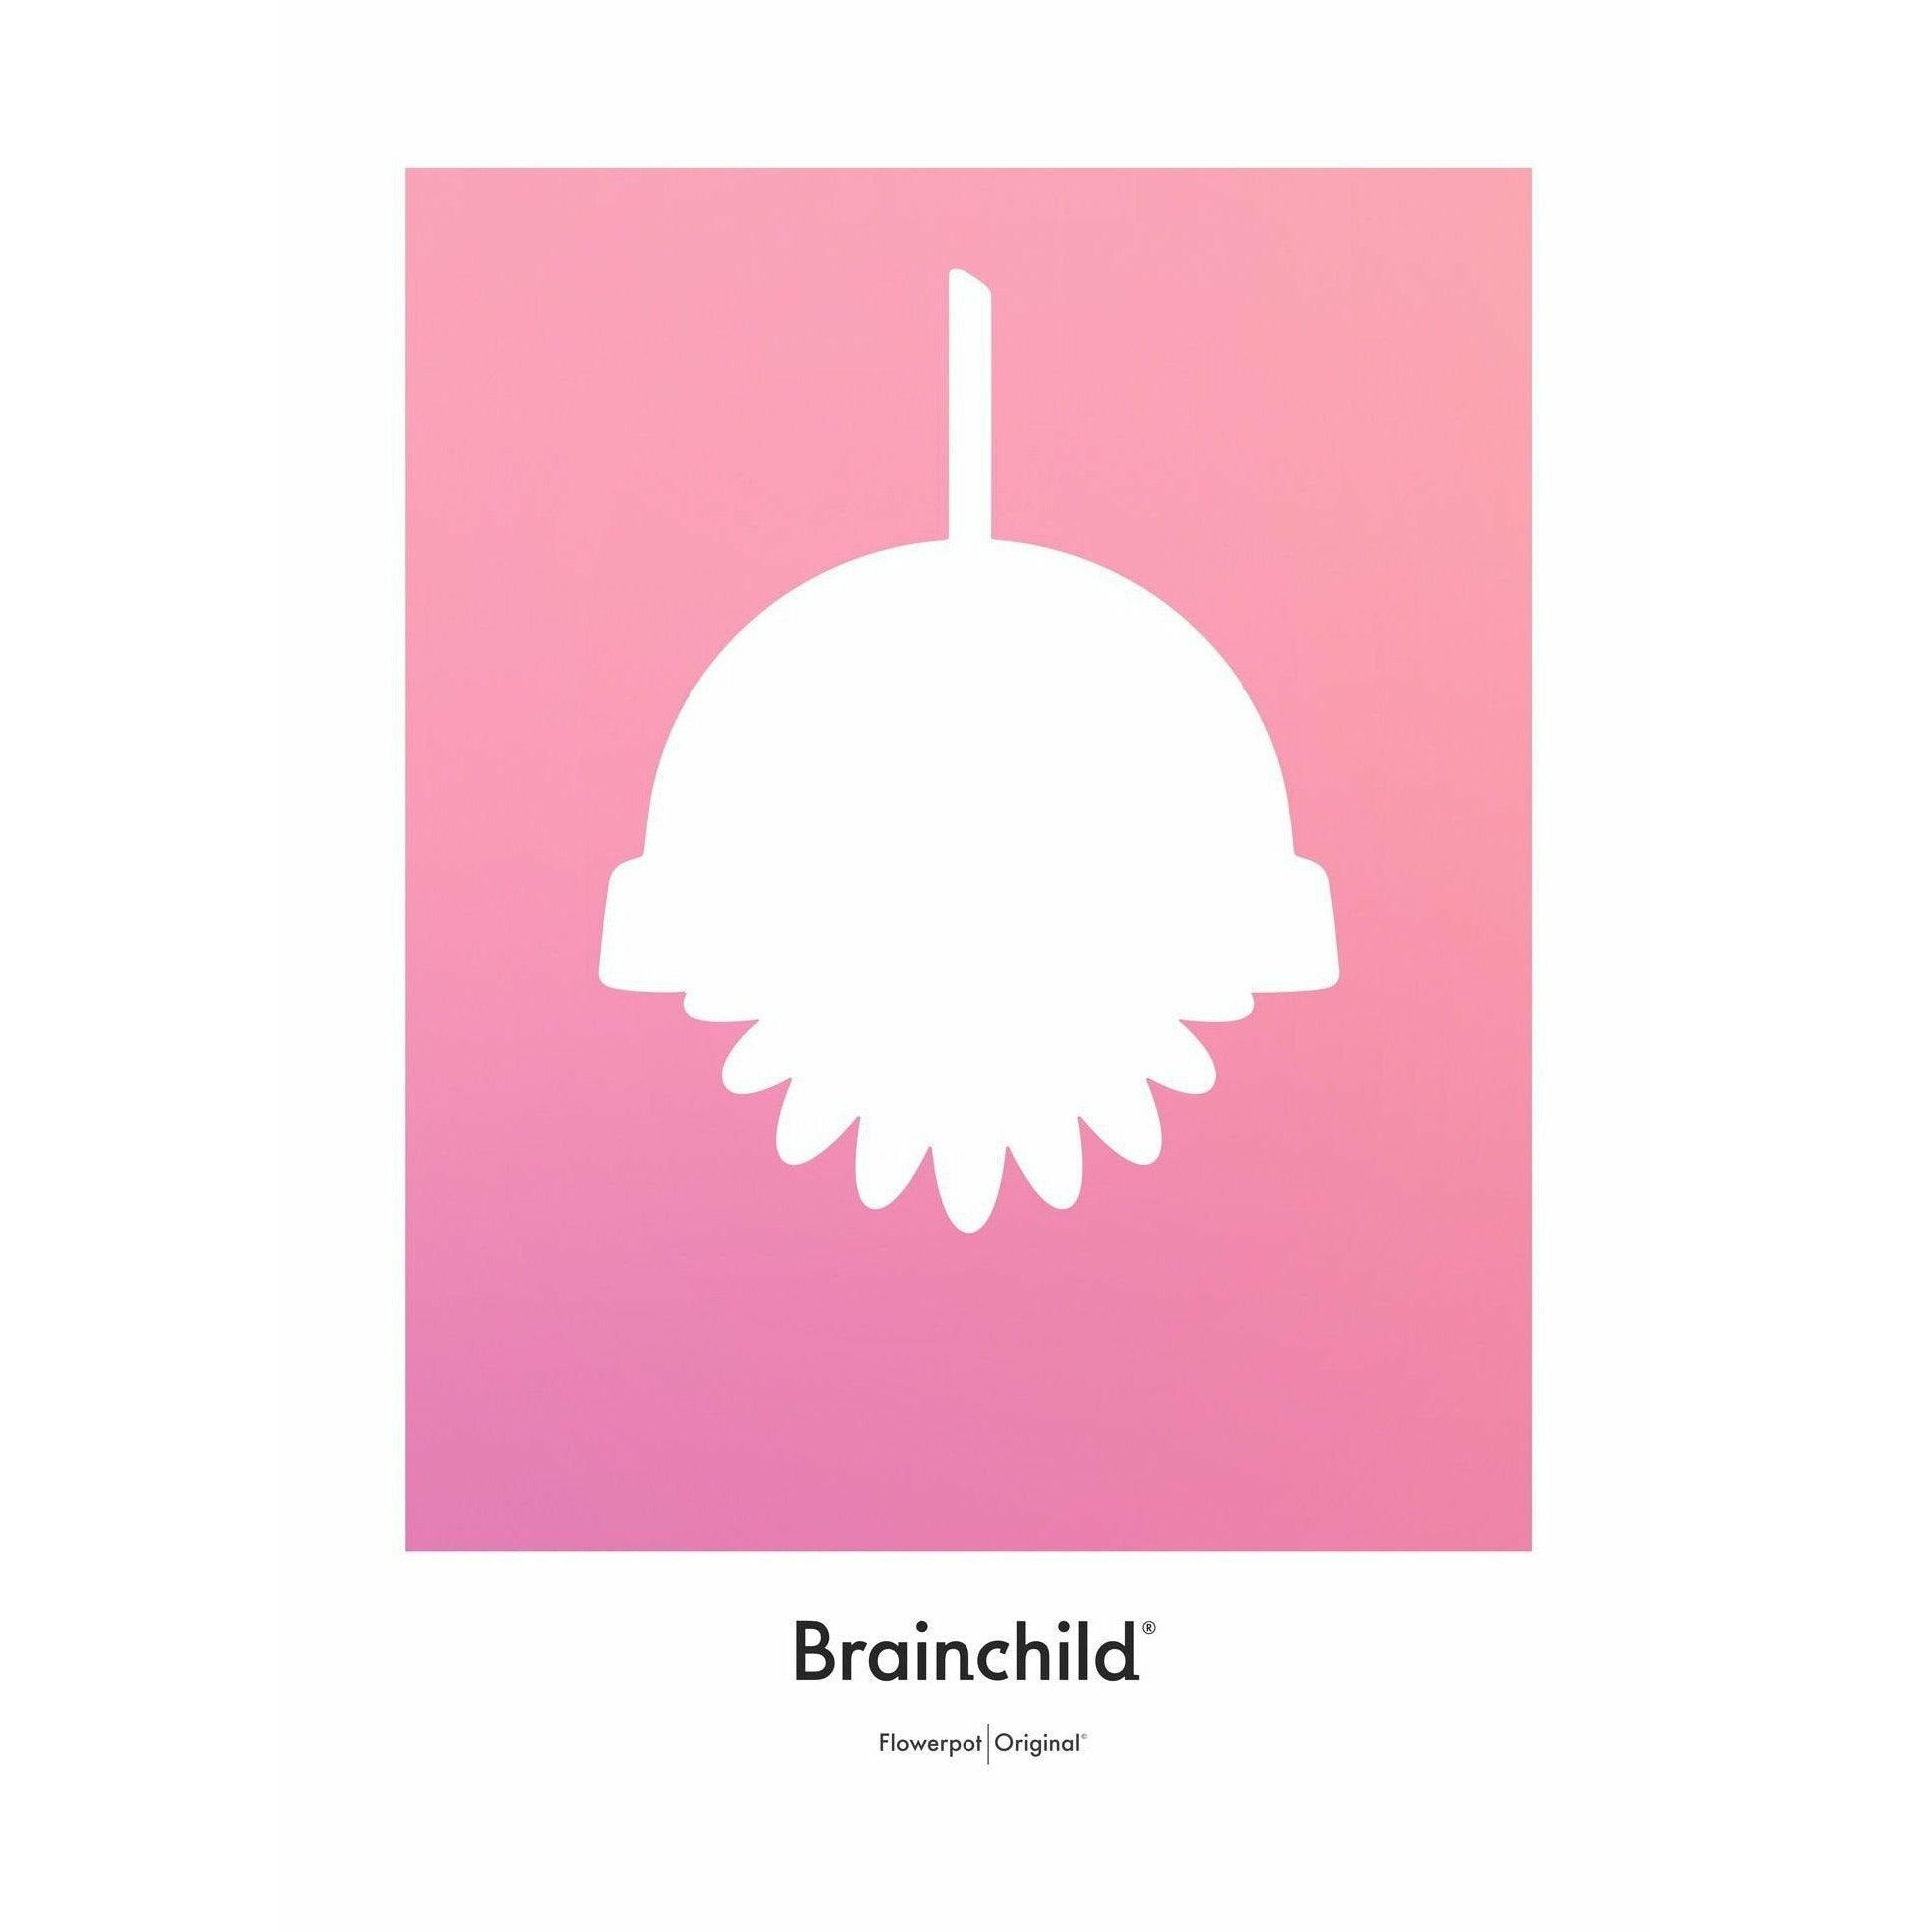 Plakát pro design Brainchild Flowerpot Design bez rámu 50 x70 cm, růžový